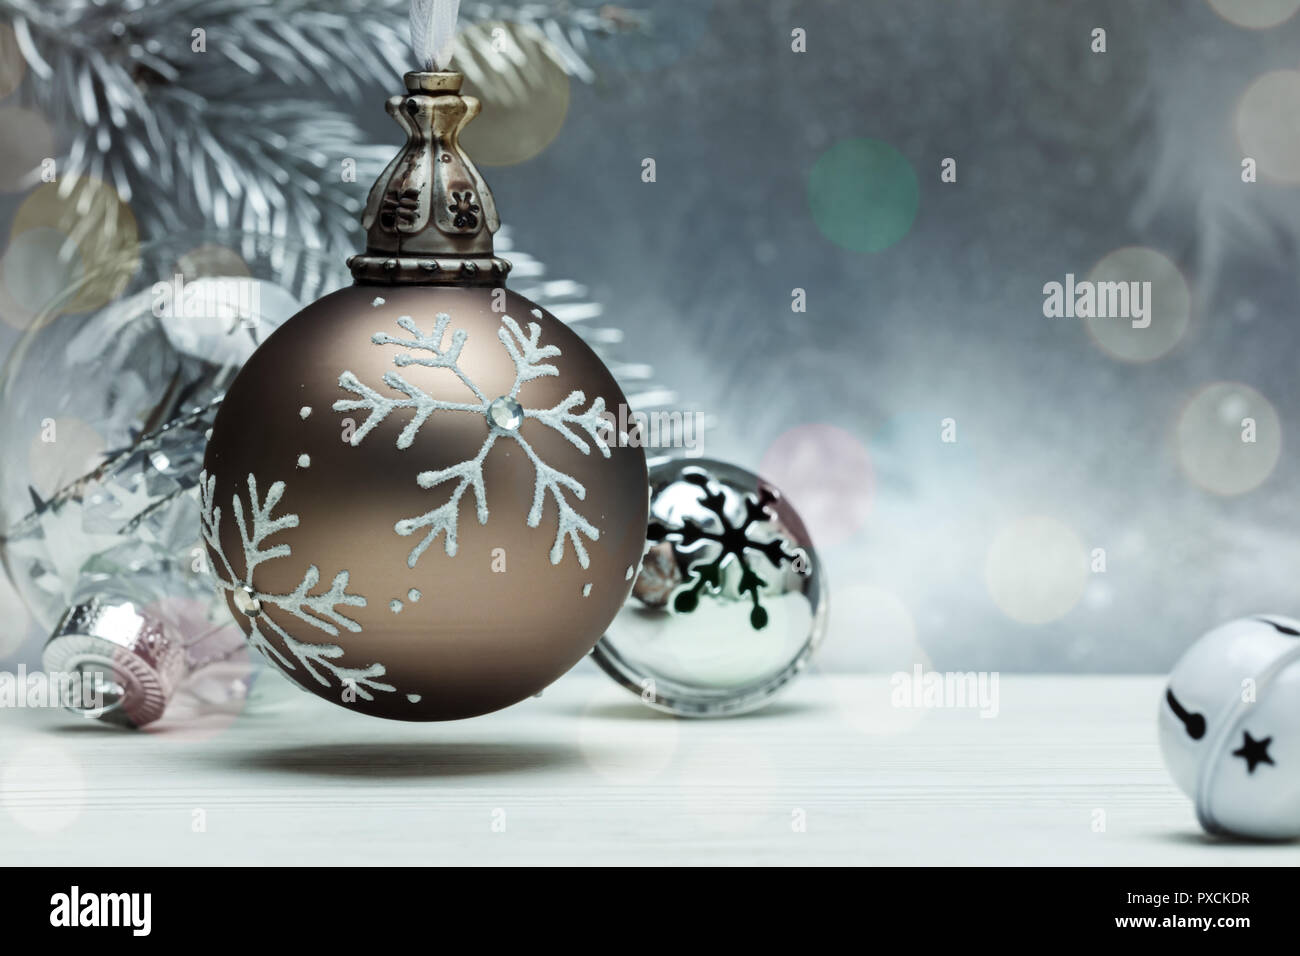 Dekorativen Kugeln aus Glas und Jingle bells für Weihnachtsbaum auf grauem Hintergrund mit unscharfen Fir Tree Branch Stockfoto